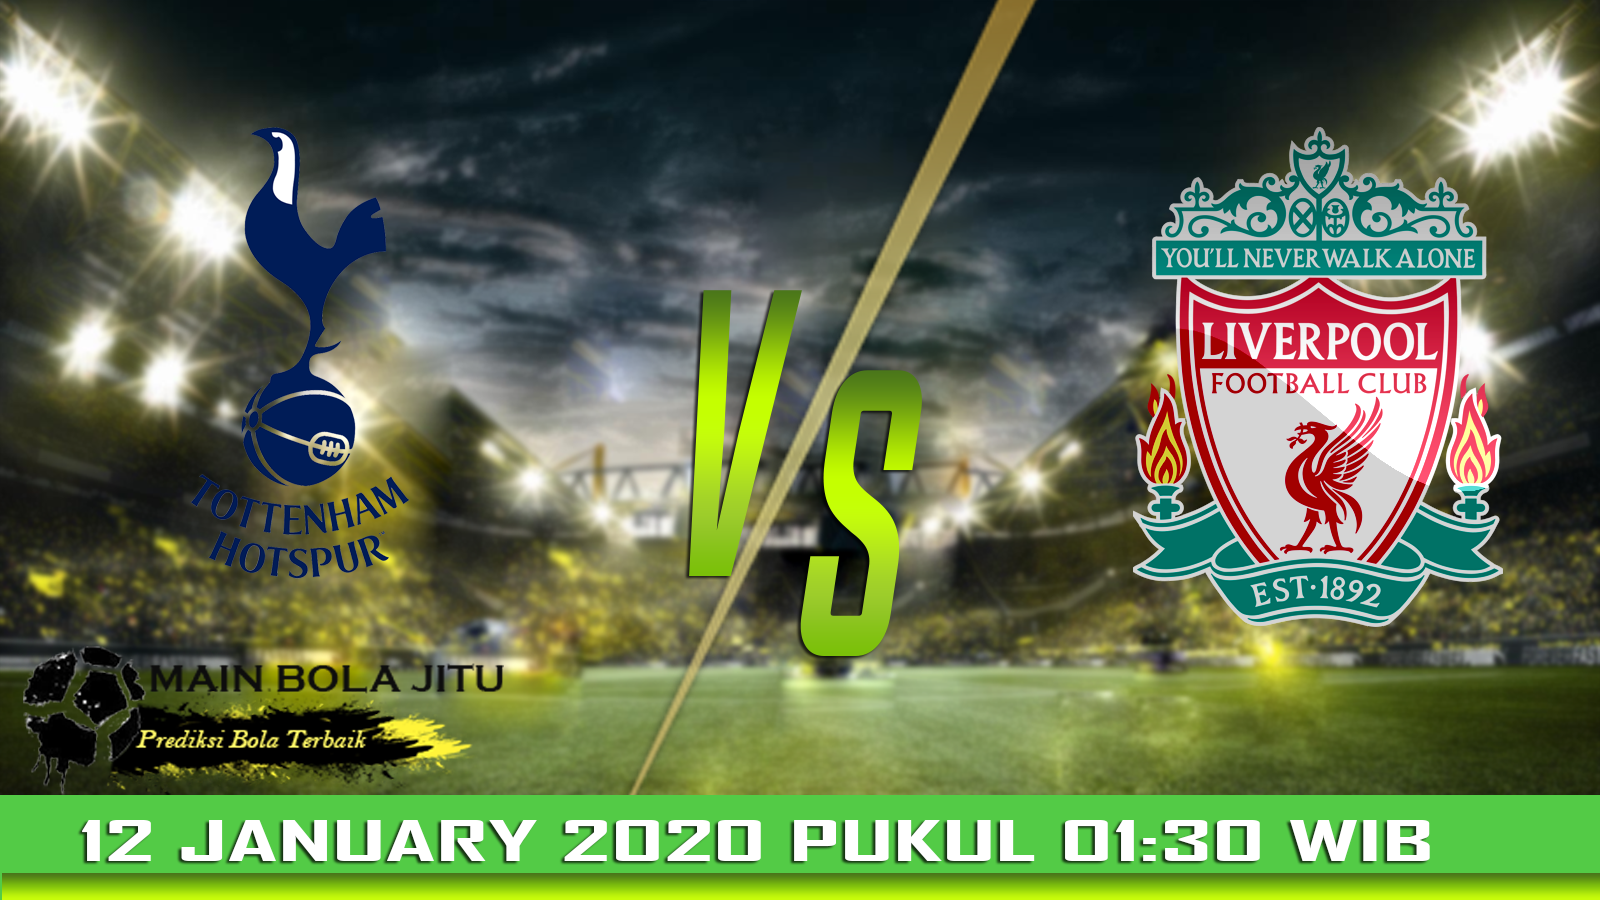 Prediksi Skor Tottenham Hotspur vs Liverpool tanggal 12-01-2020